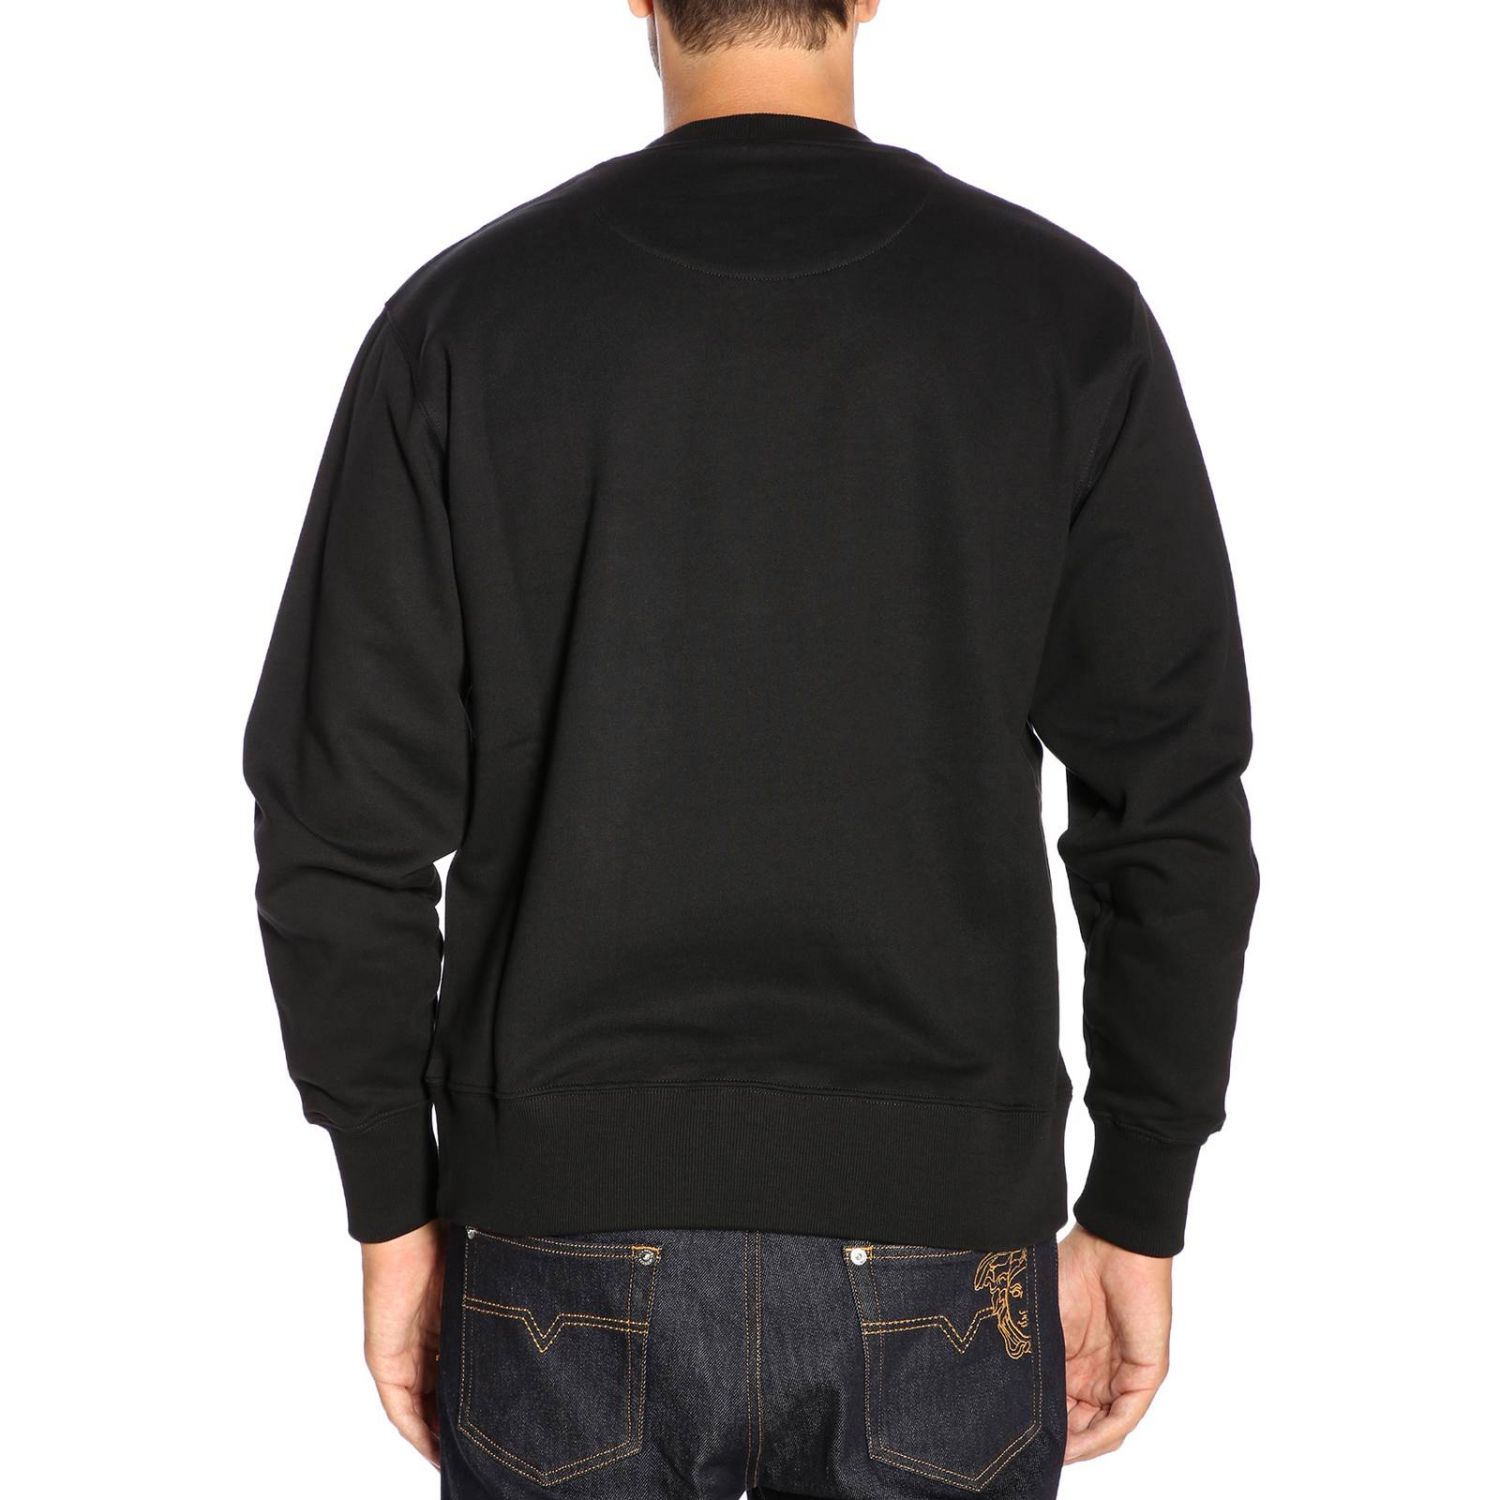 Versus Outlet: Sweater men - Black | Sweatshirt Versus BU90627K BJ10390 ...